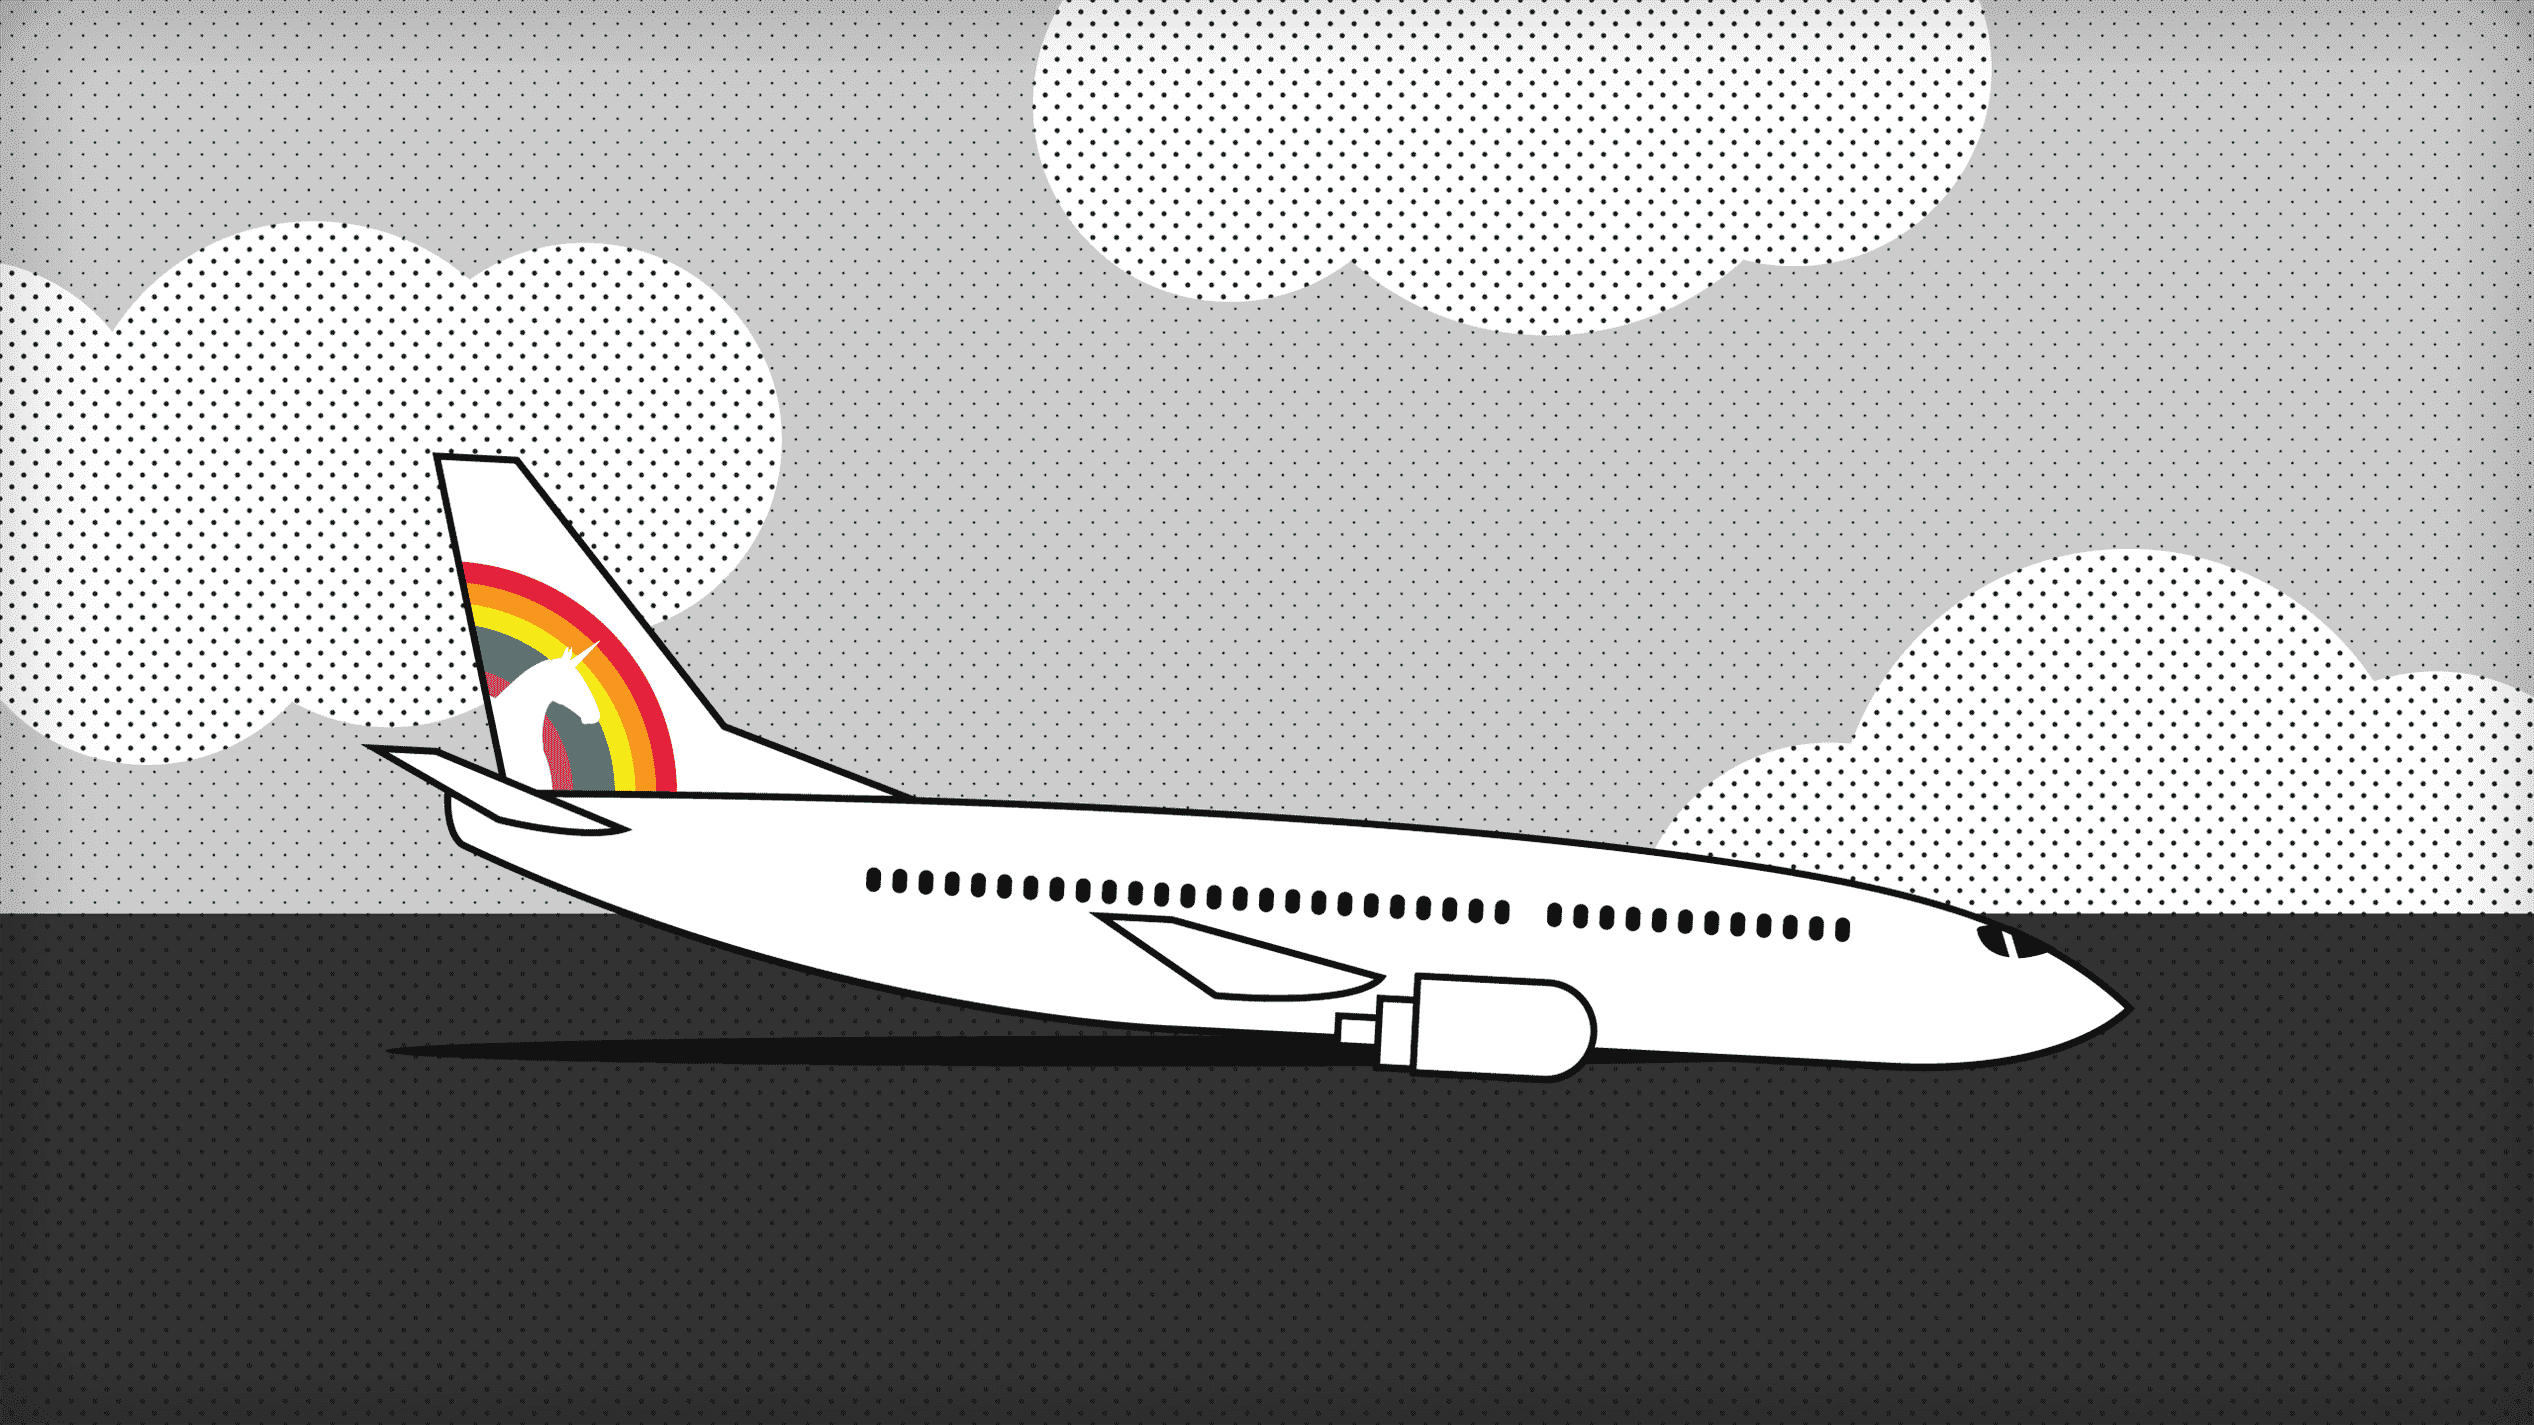 Une illustration d'un avion à réaction descendant avec un logo de licorne sur sa queue